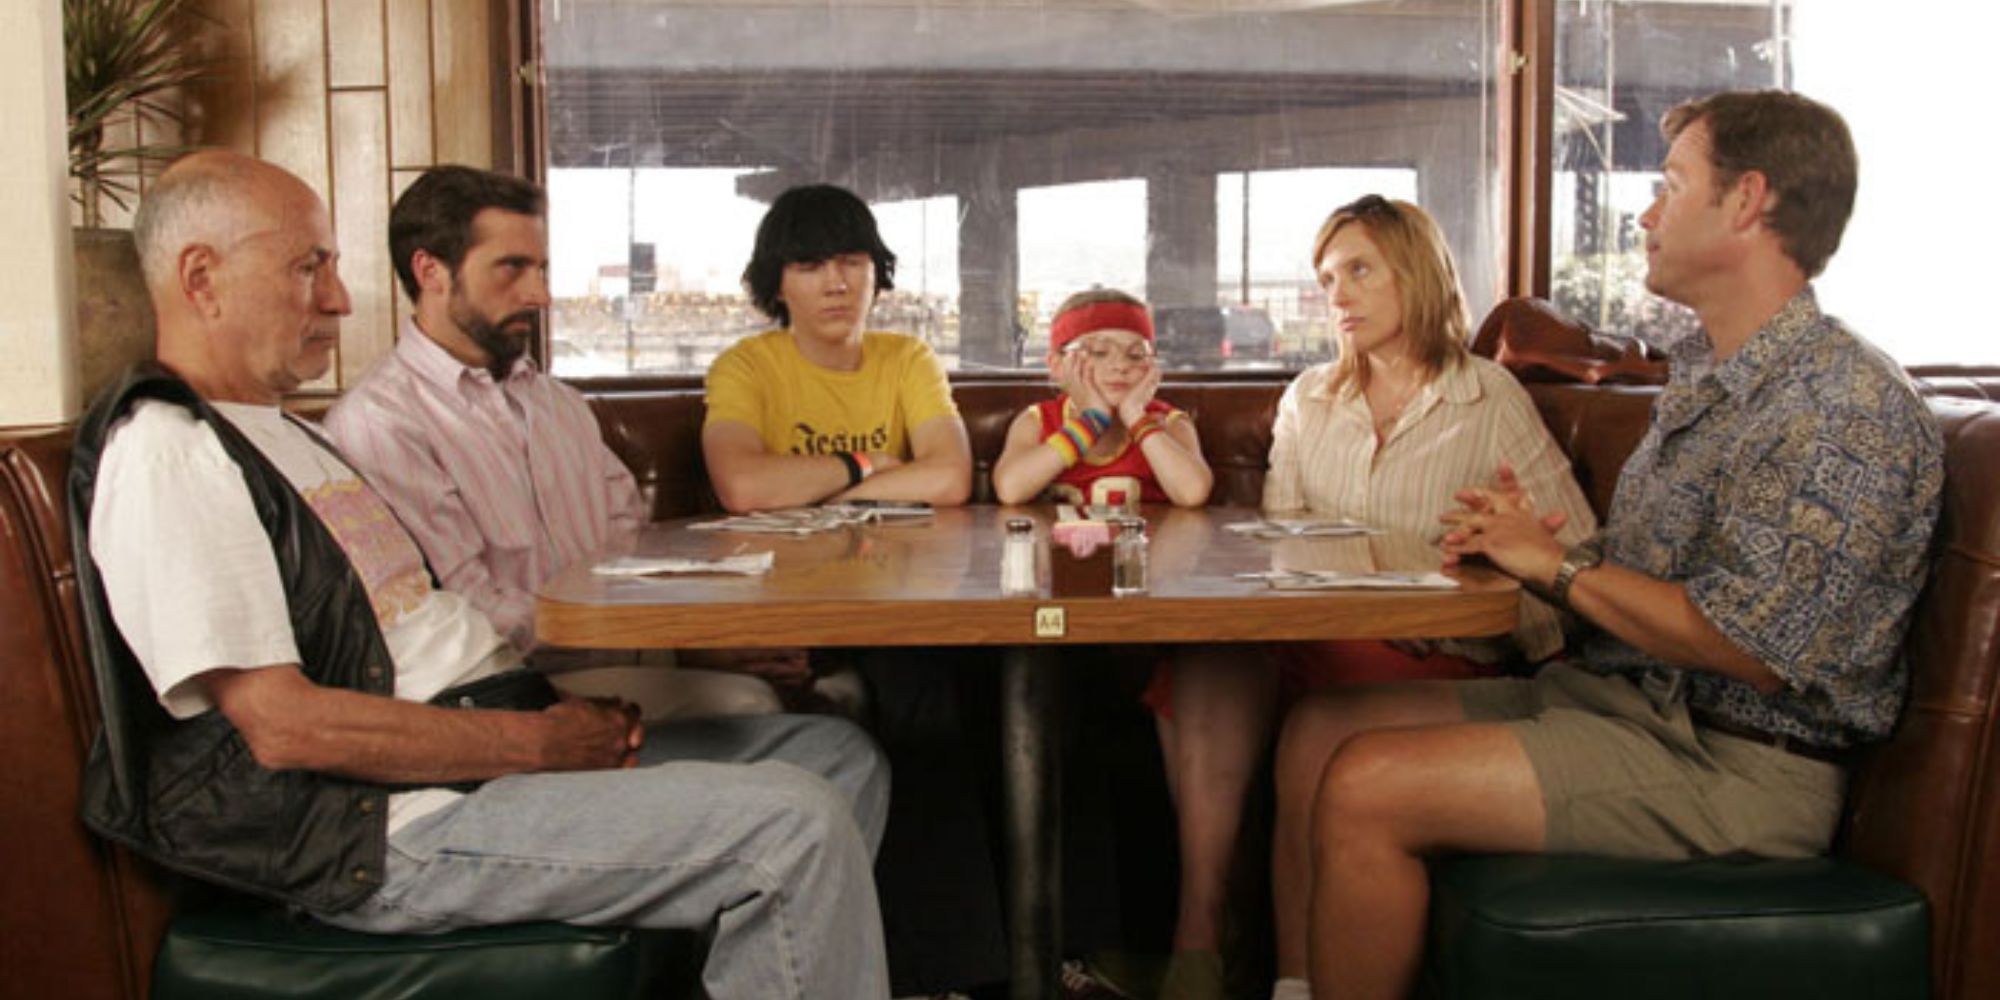 La famille Hoover de Little Miss Sunshine assise dans un restaurant.